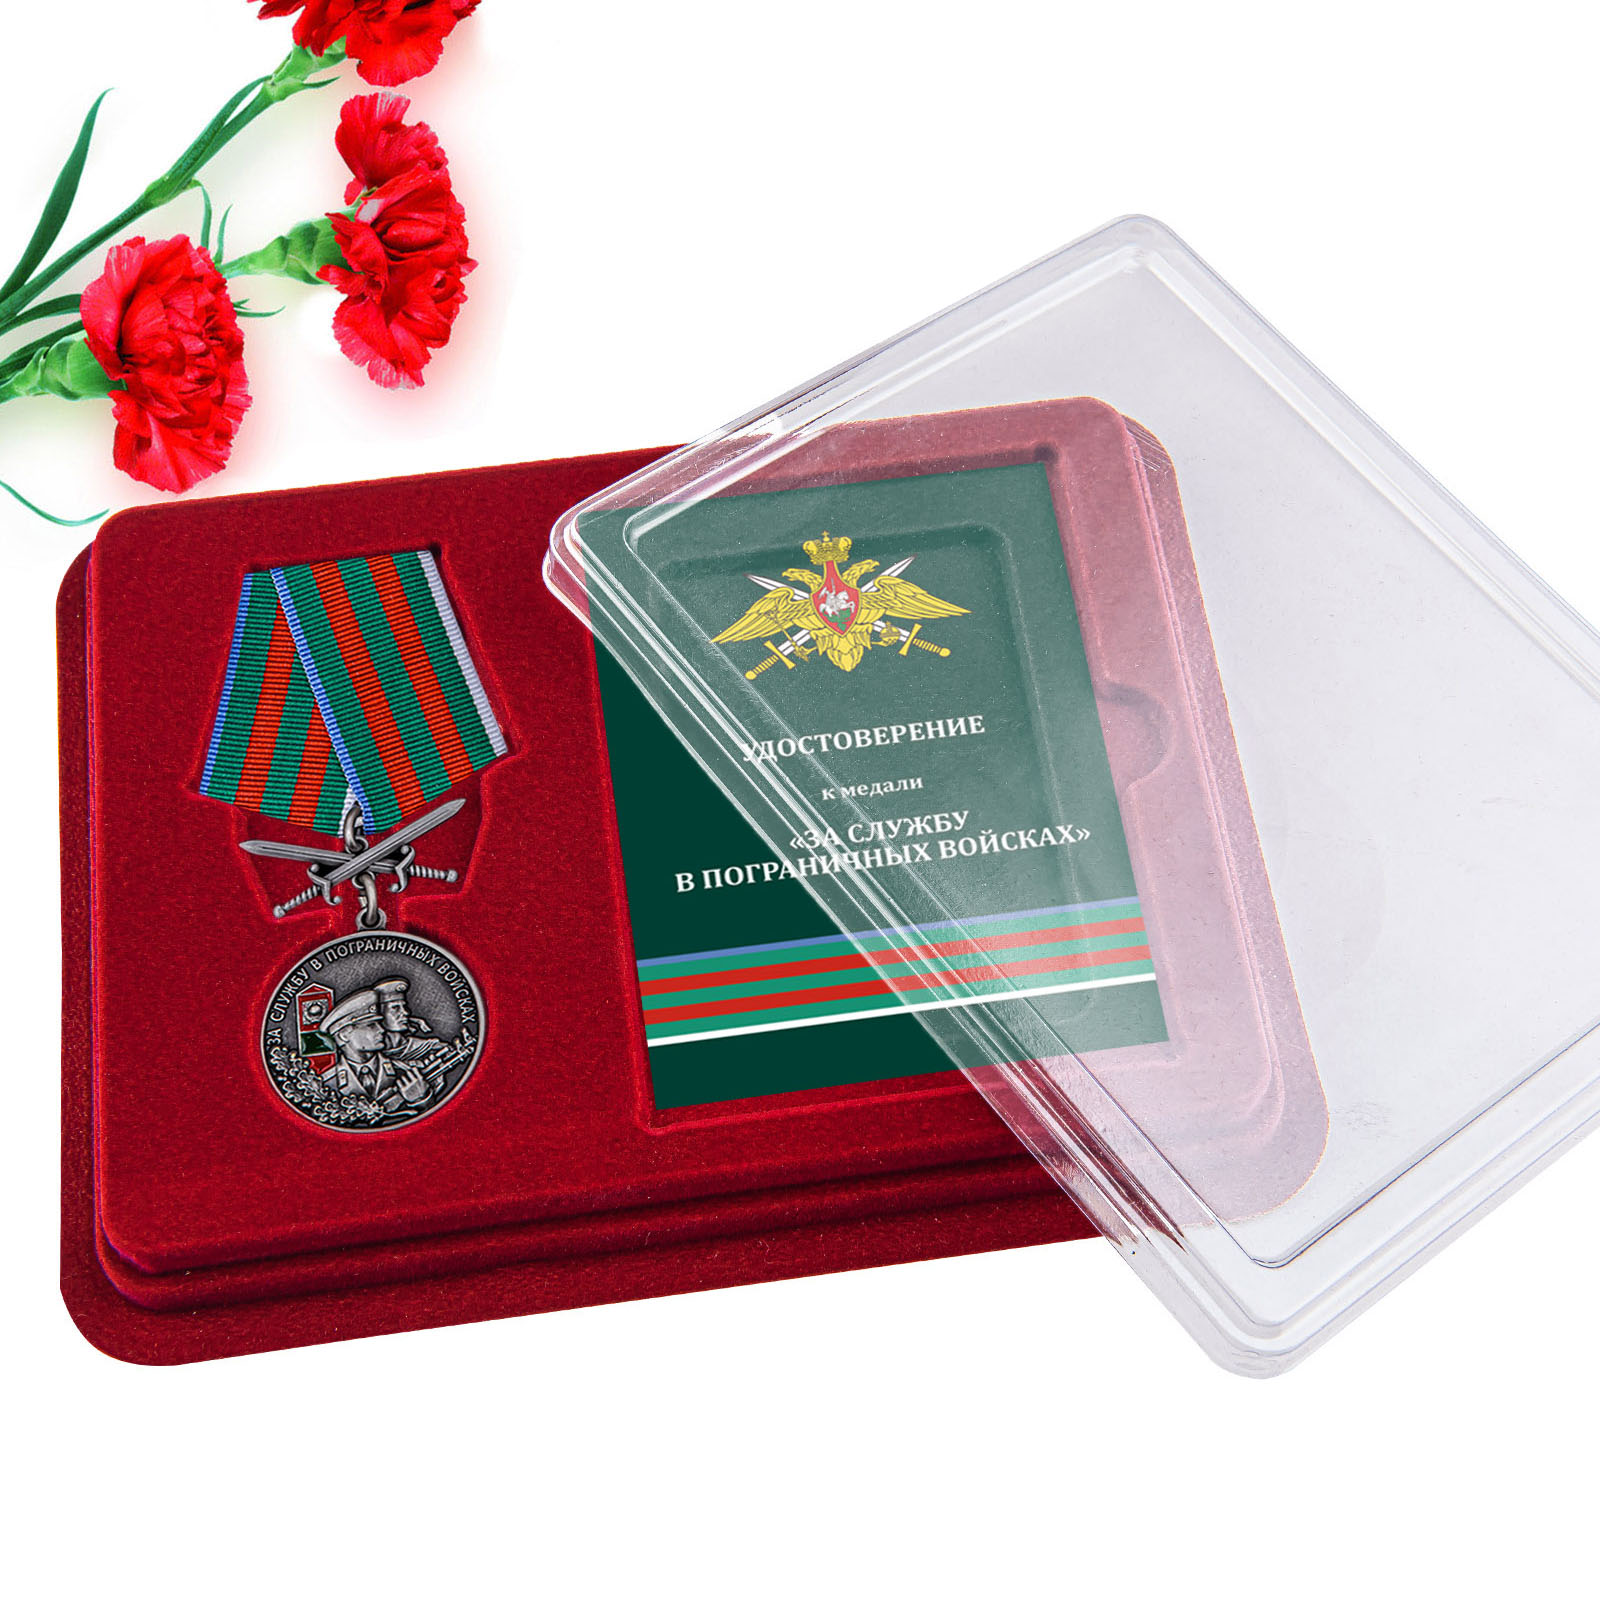 Купить медаль За службу в Пограничных войсках онлайн выгодно